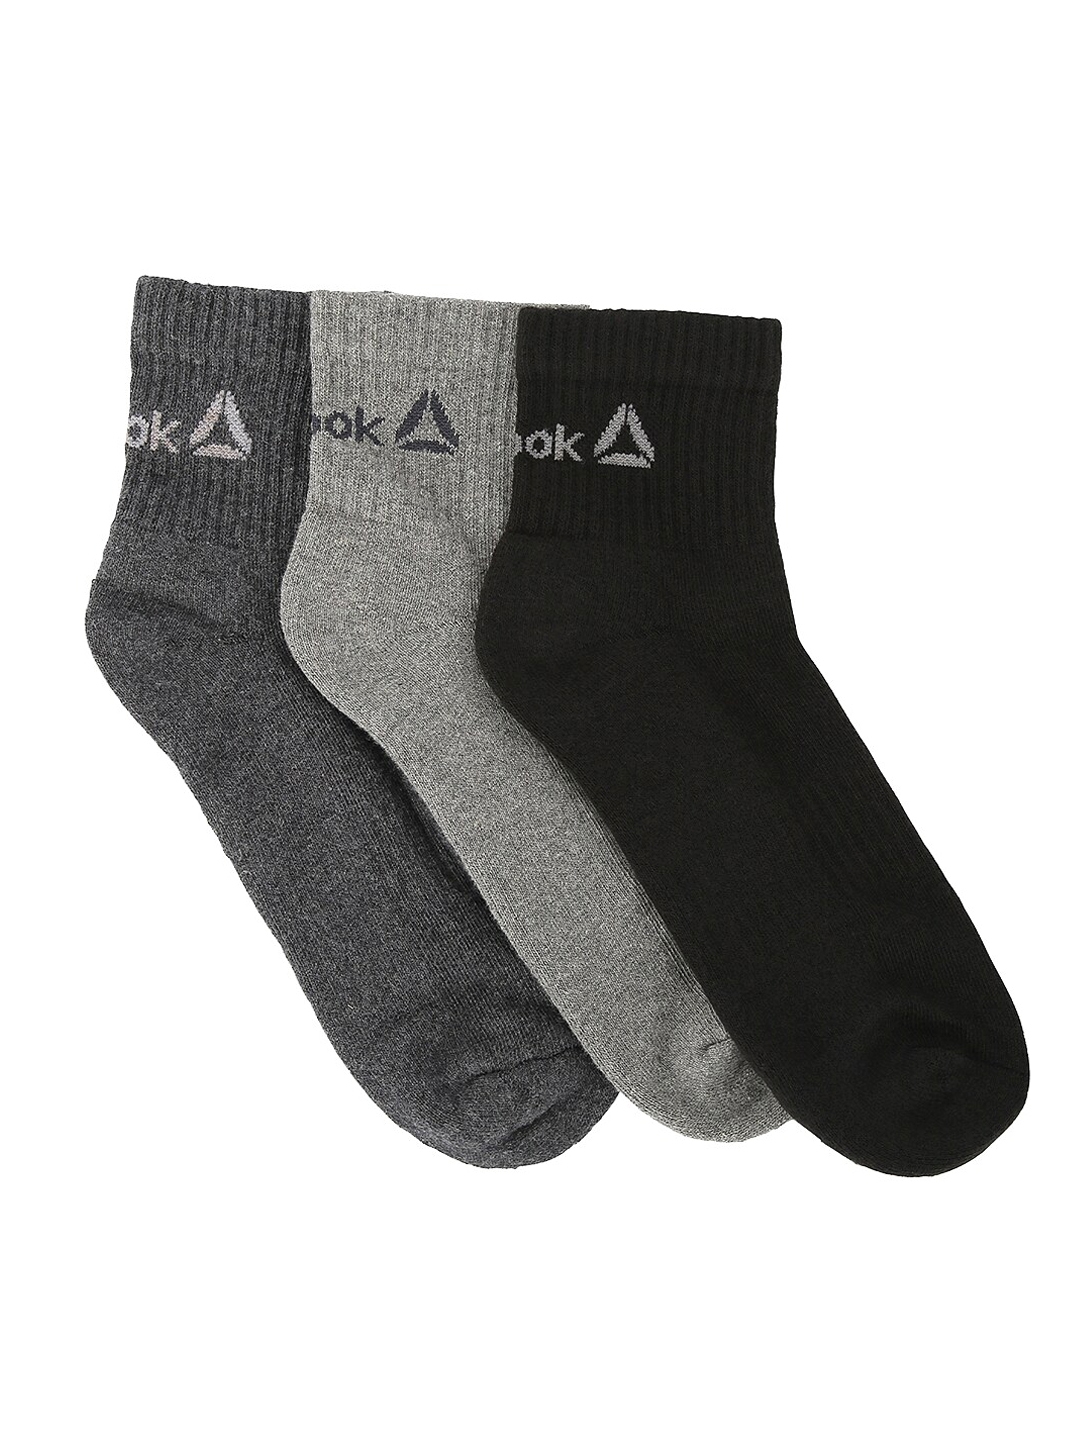 Reebok Men Pack of 3 Multi Coloured Ankle Length Socks